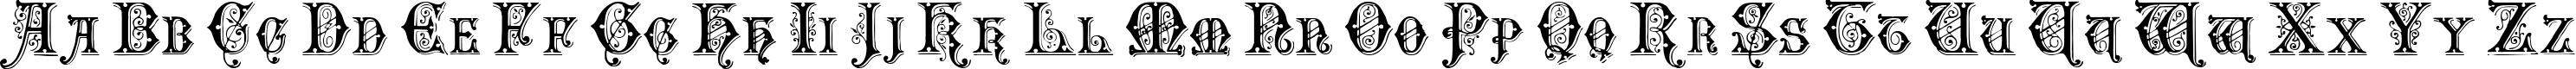 Пример написания английского алфавита шрифтом EmporiumCapitals